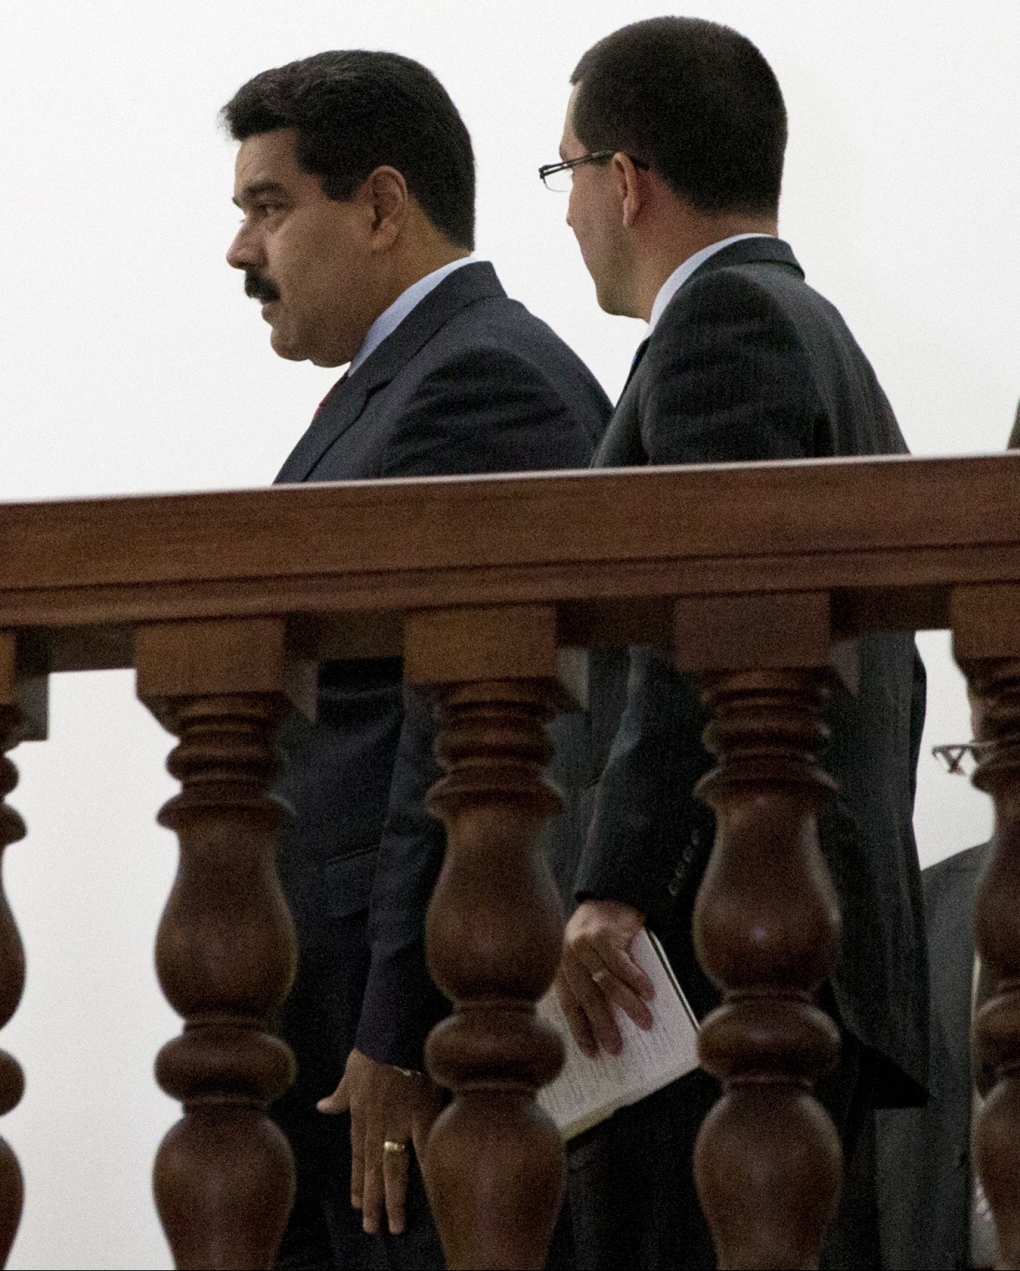 Nicolas Maduro speaks with Jorge Arreaza